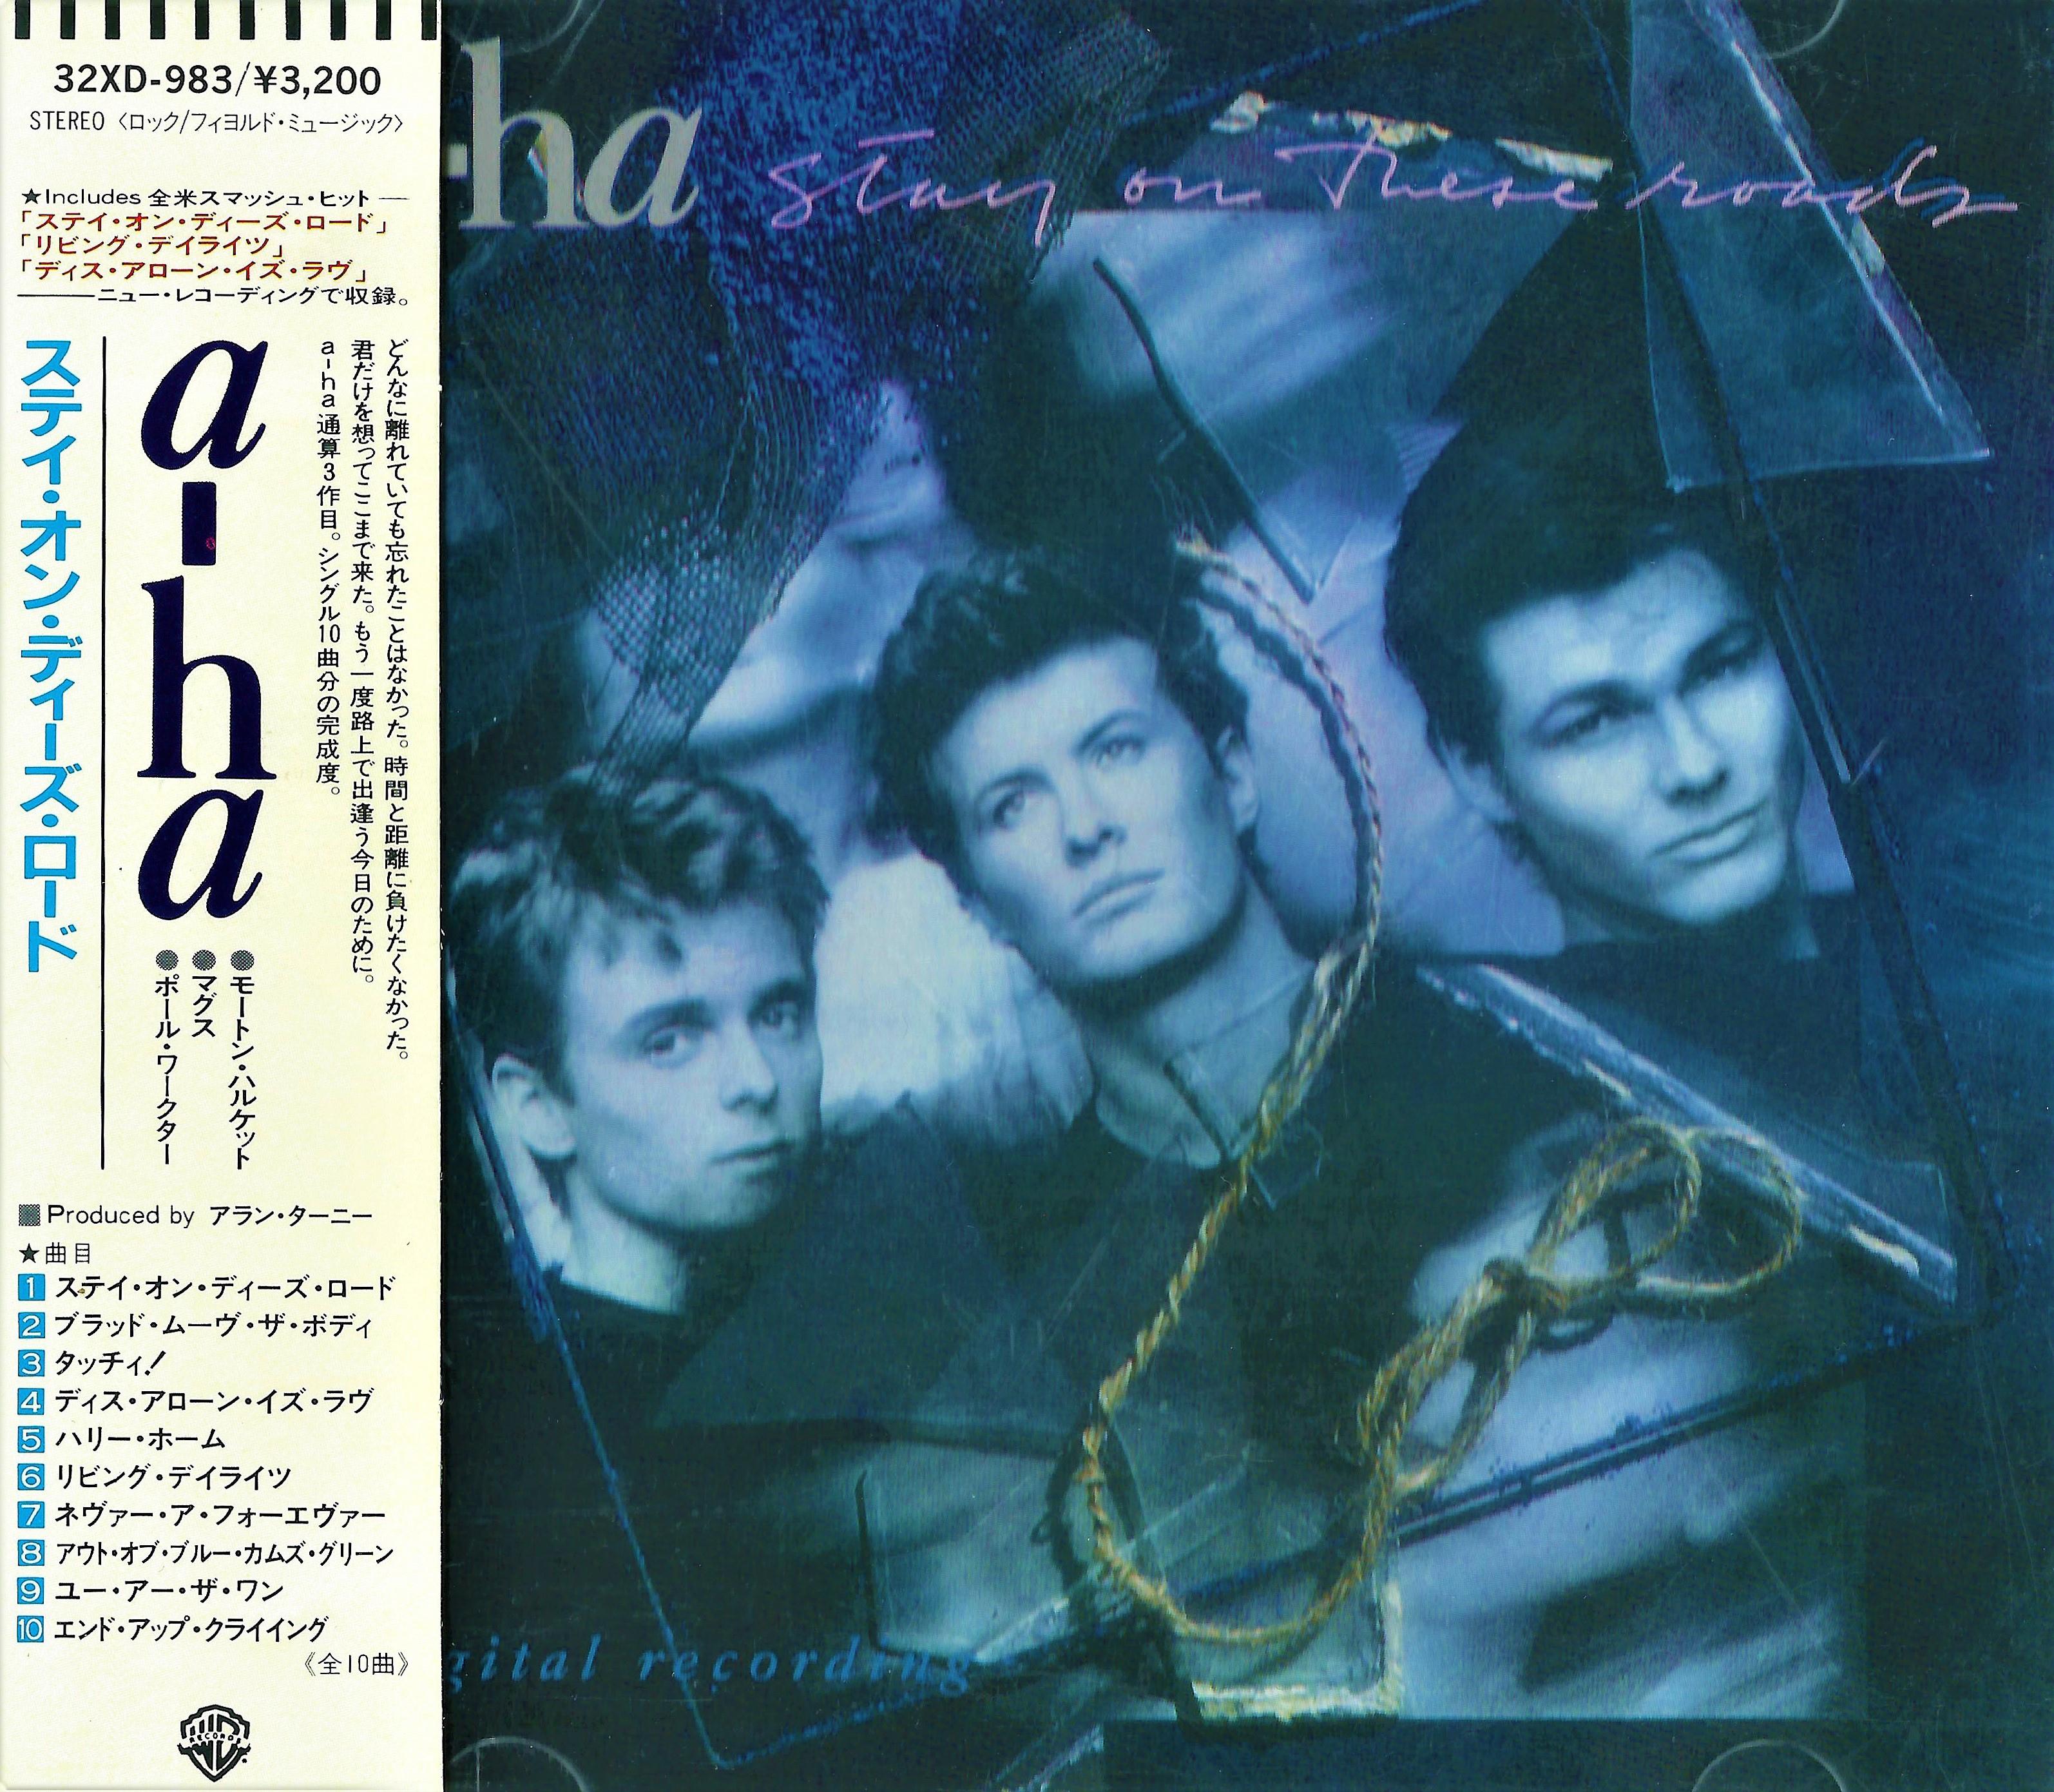 Cd roads. A-ha 1988. A-ha - 1988 stay on these Roads (Japan). 1988 - Stay on these Roads. A-ha дискография.